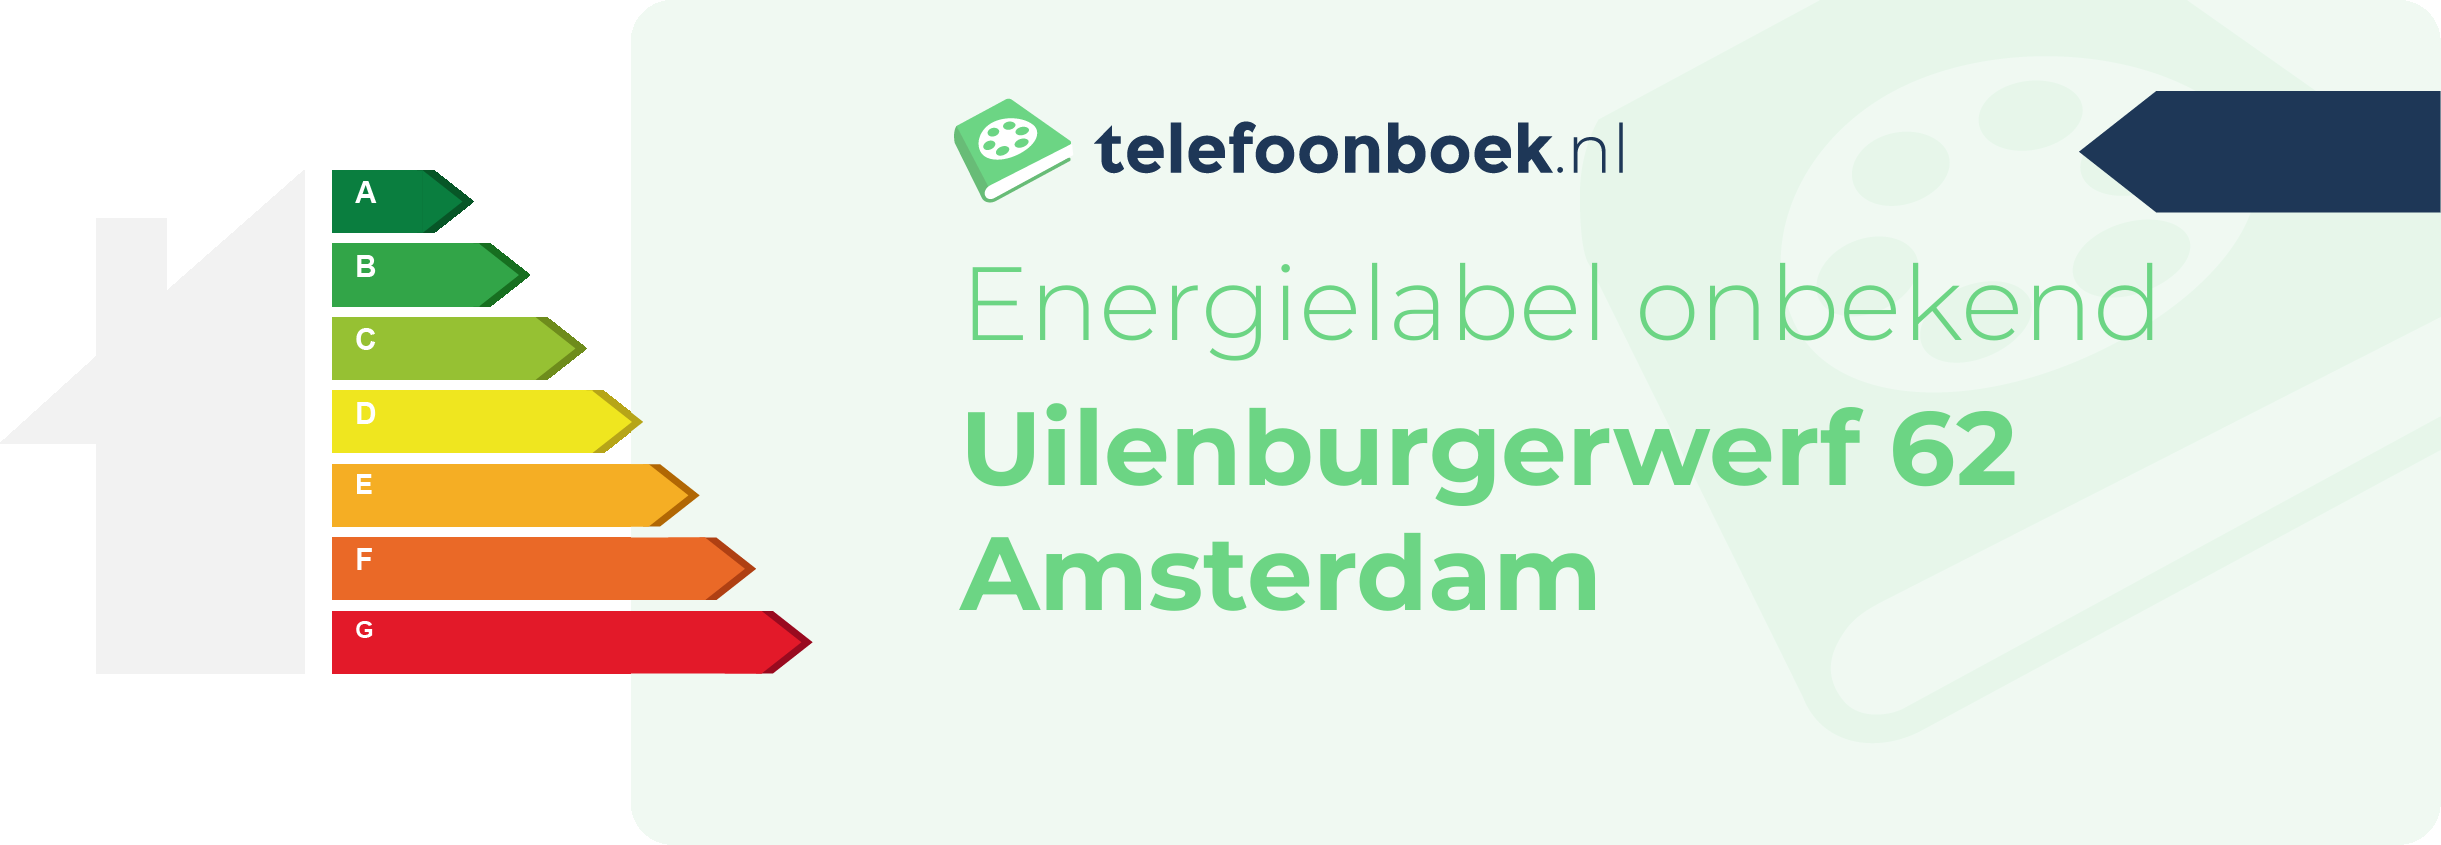 Energielabel Uilenburgerwerf 62 Amsterdam